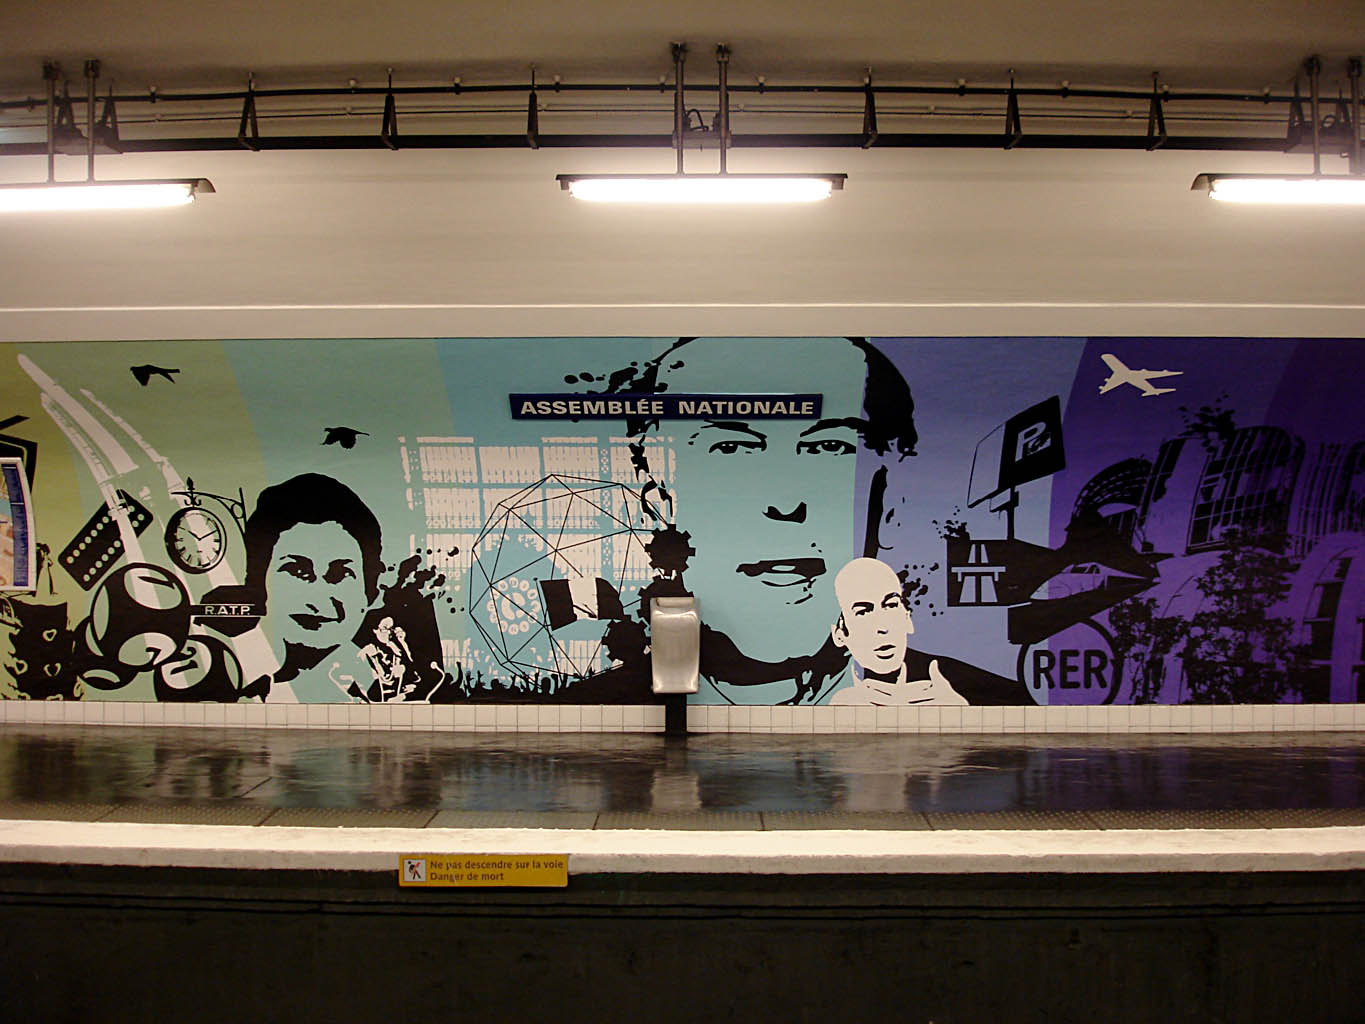 La station Assemblée Nationale comporte des silhouettes de députés dans ses peintures murales colorées longues de 90 mètres